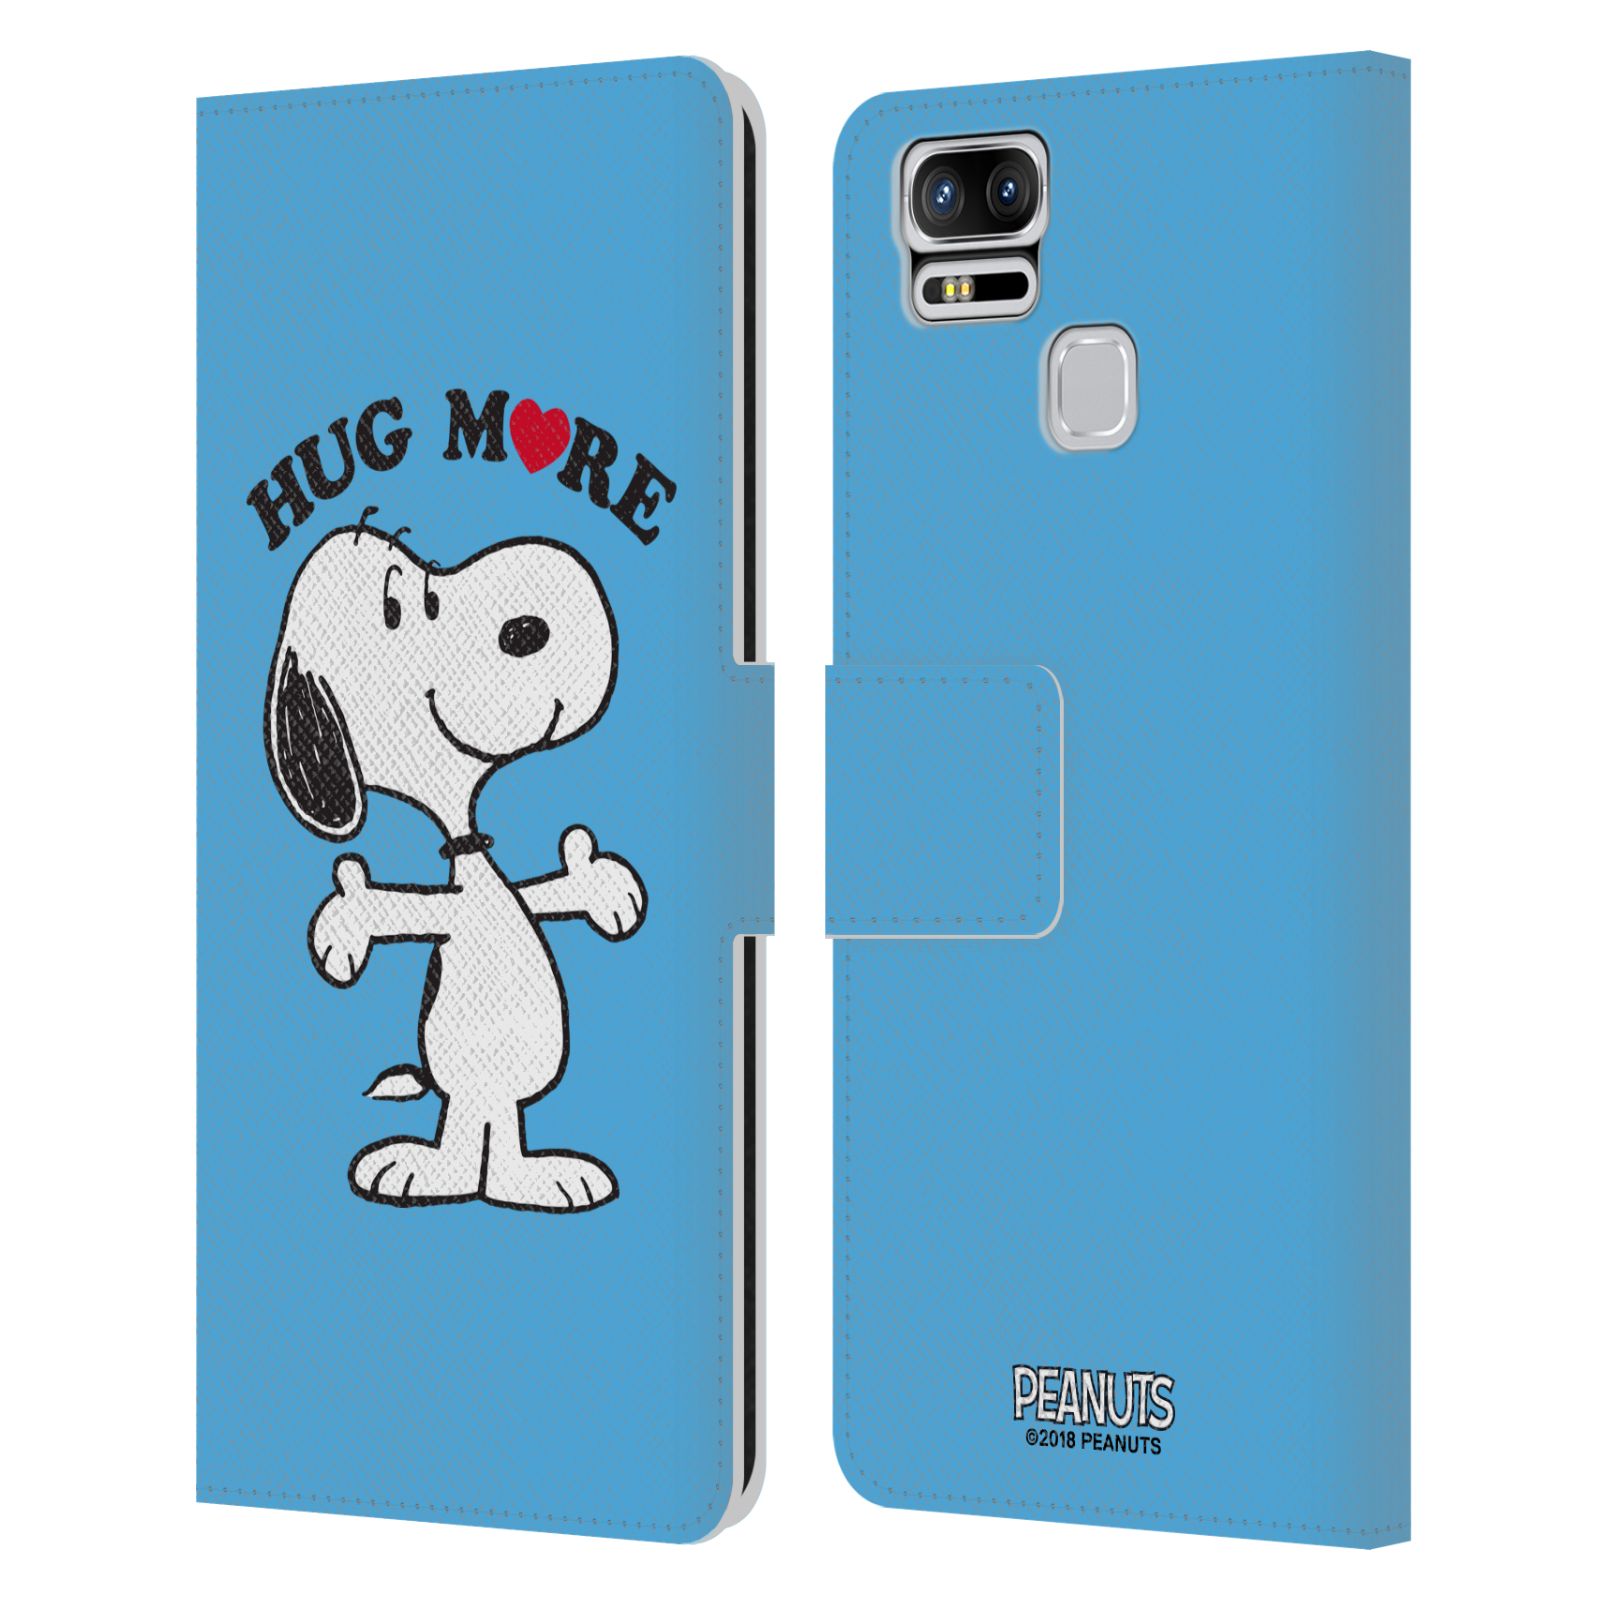 Pouzdro na mobil Asus Zenfone 3 Zoom ZE553KL - Head Case - Peanuts - pejsek snoopy světle modré objetí